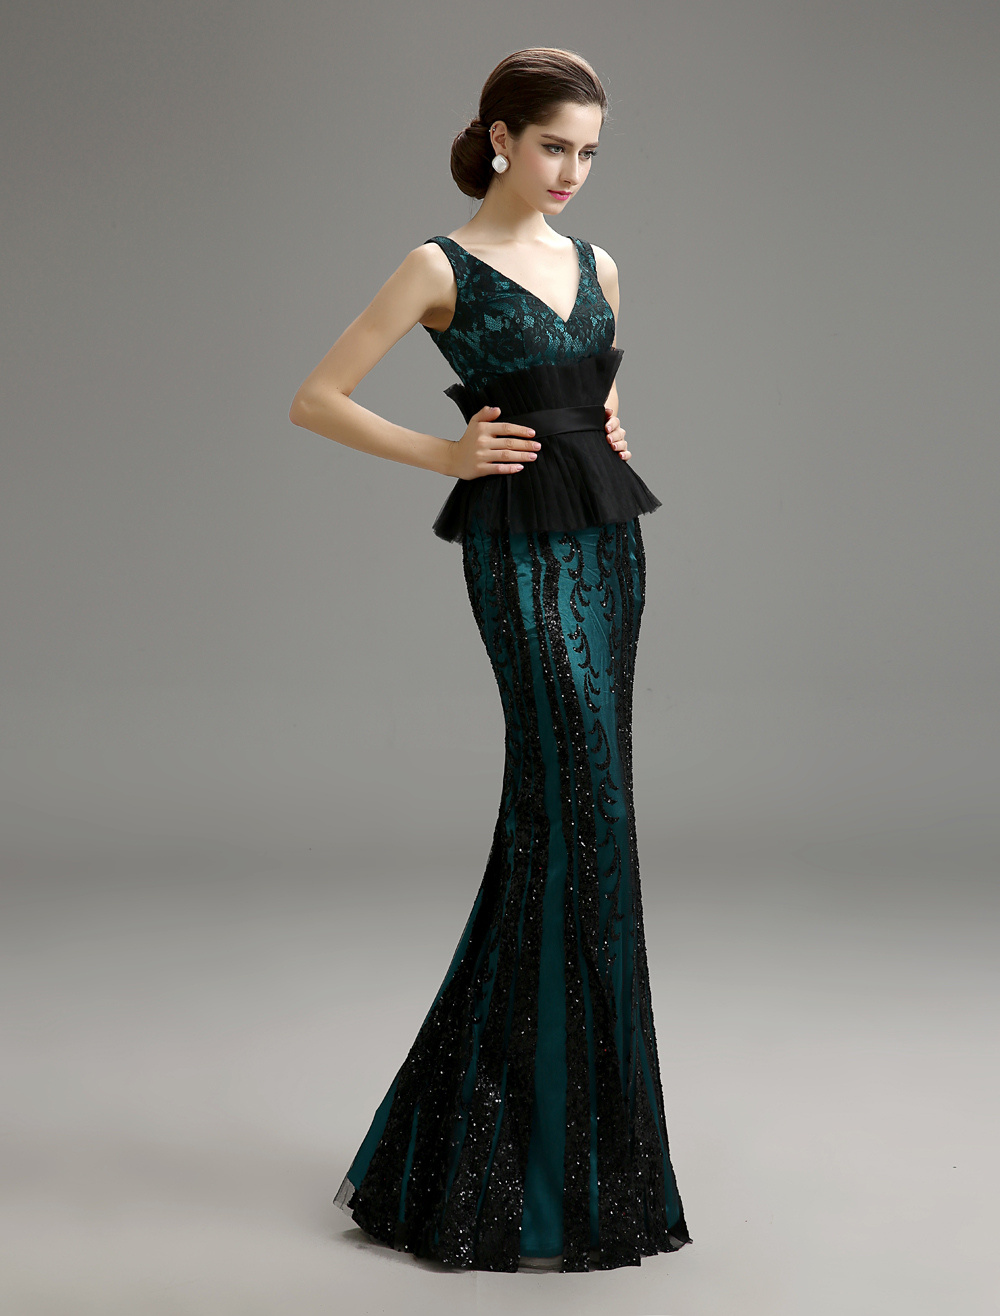 Lace Peplum Evening Dress With V-Neck - Milanoo.com